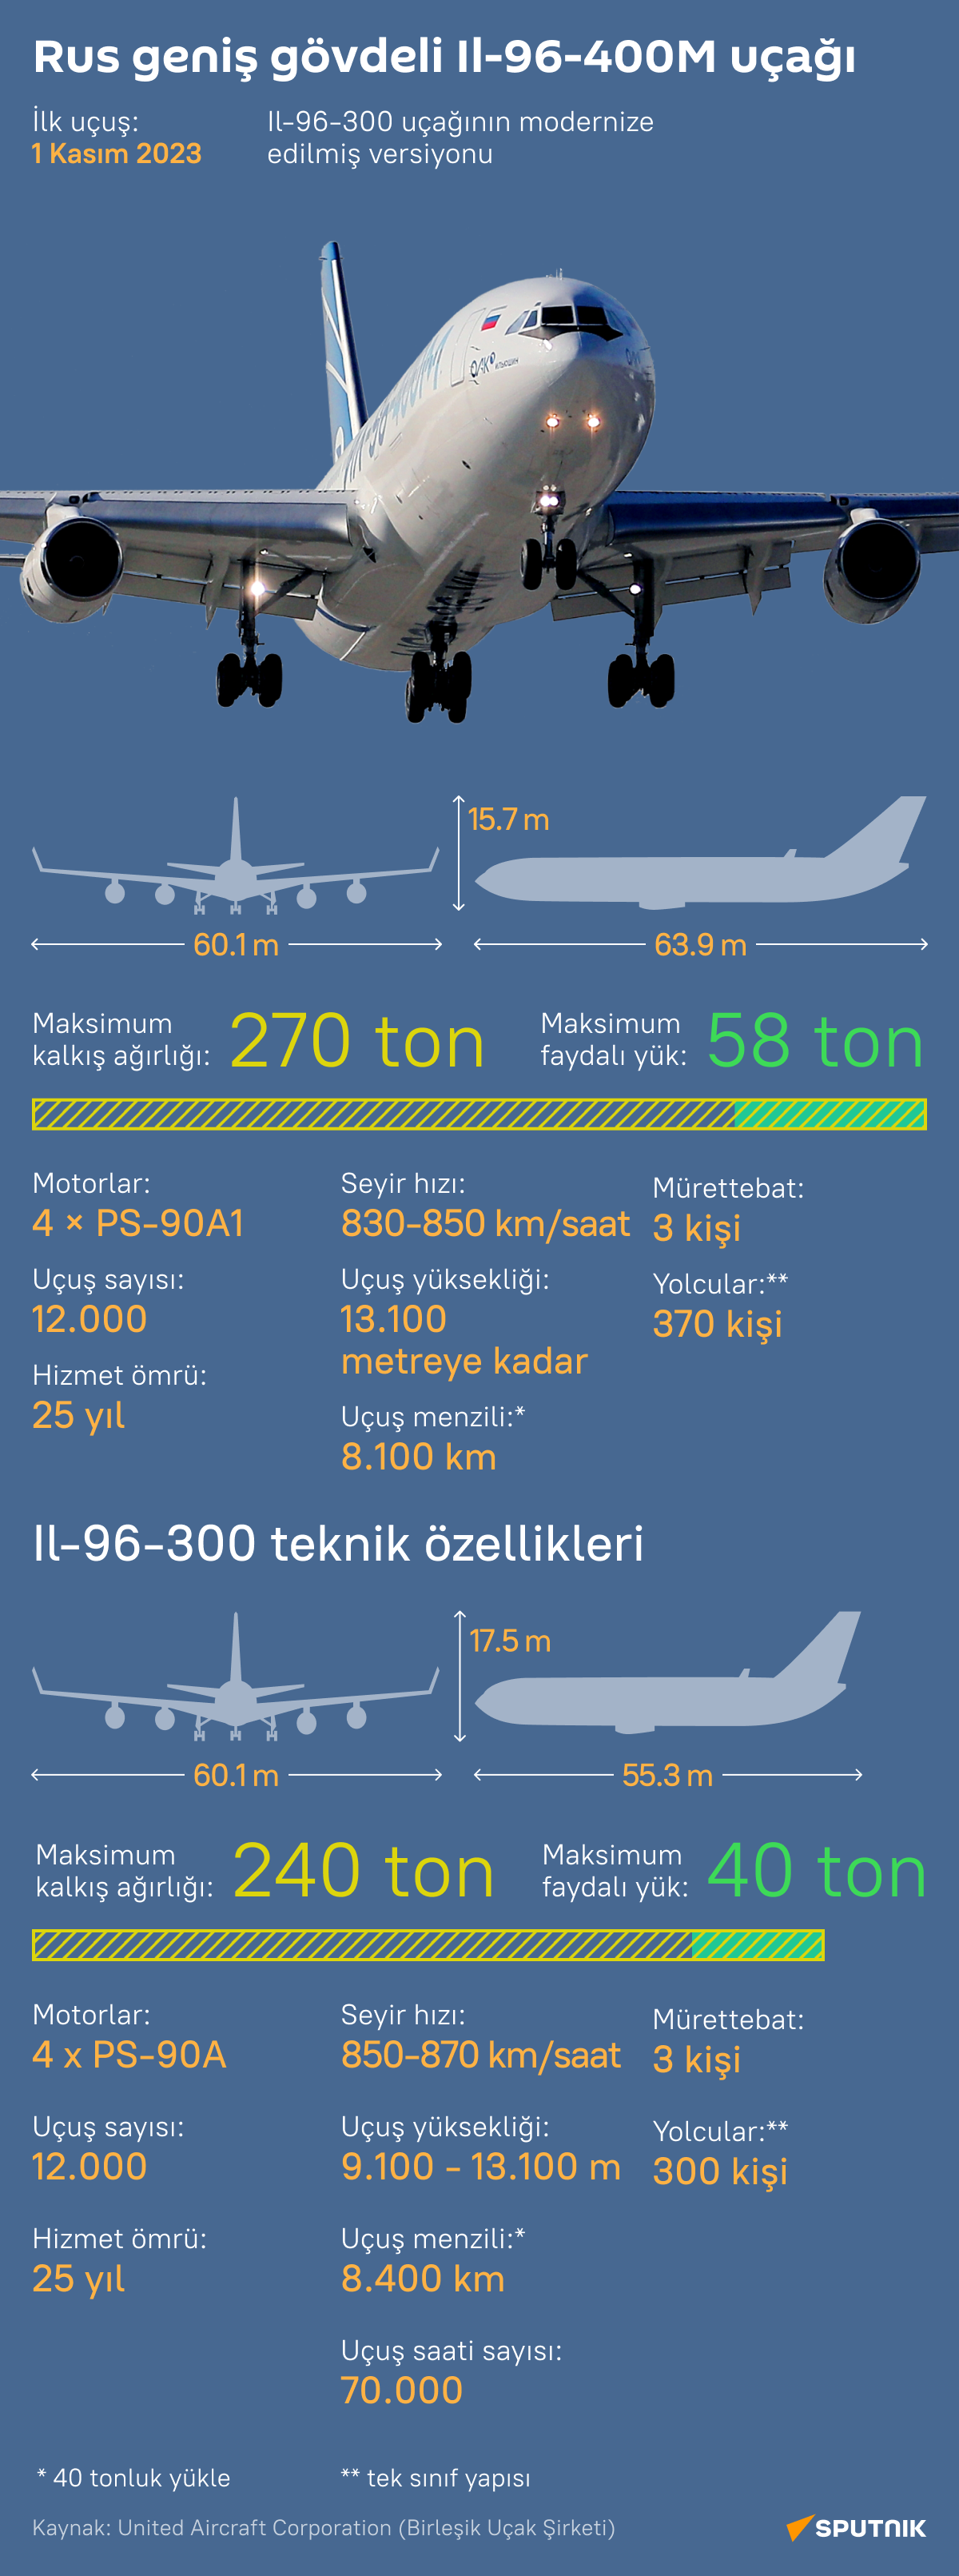 İlk uçuşunu yapan Rus İl-96-400M uçağının özellikleri nelerdir? - Sputnik Türkiye